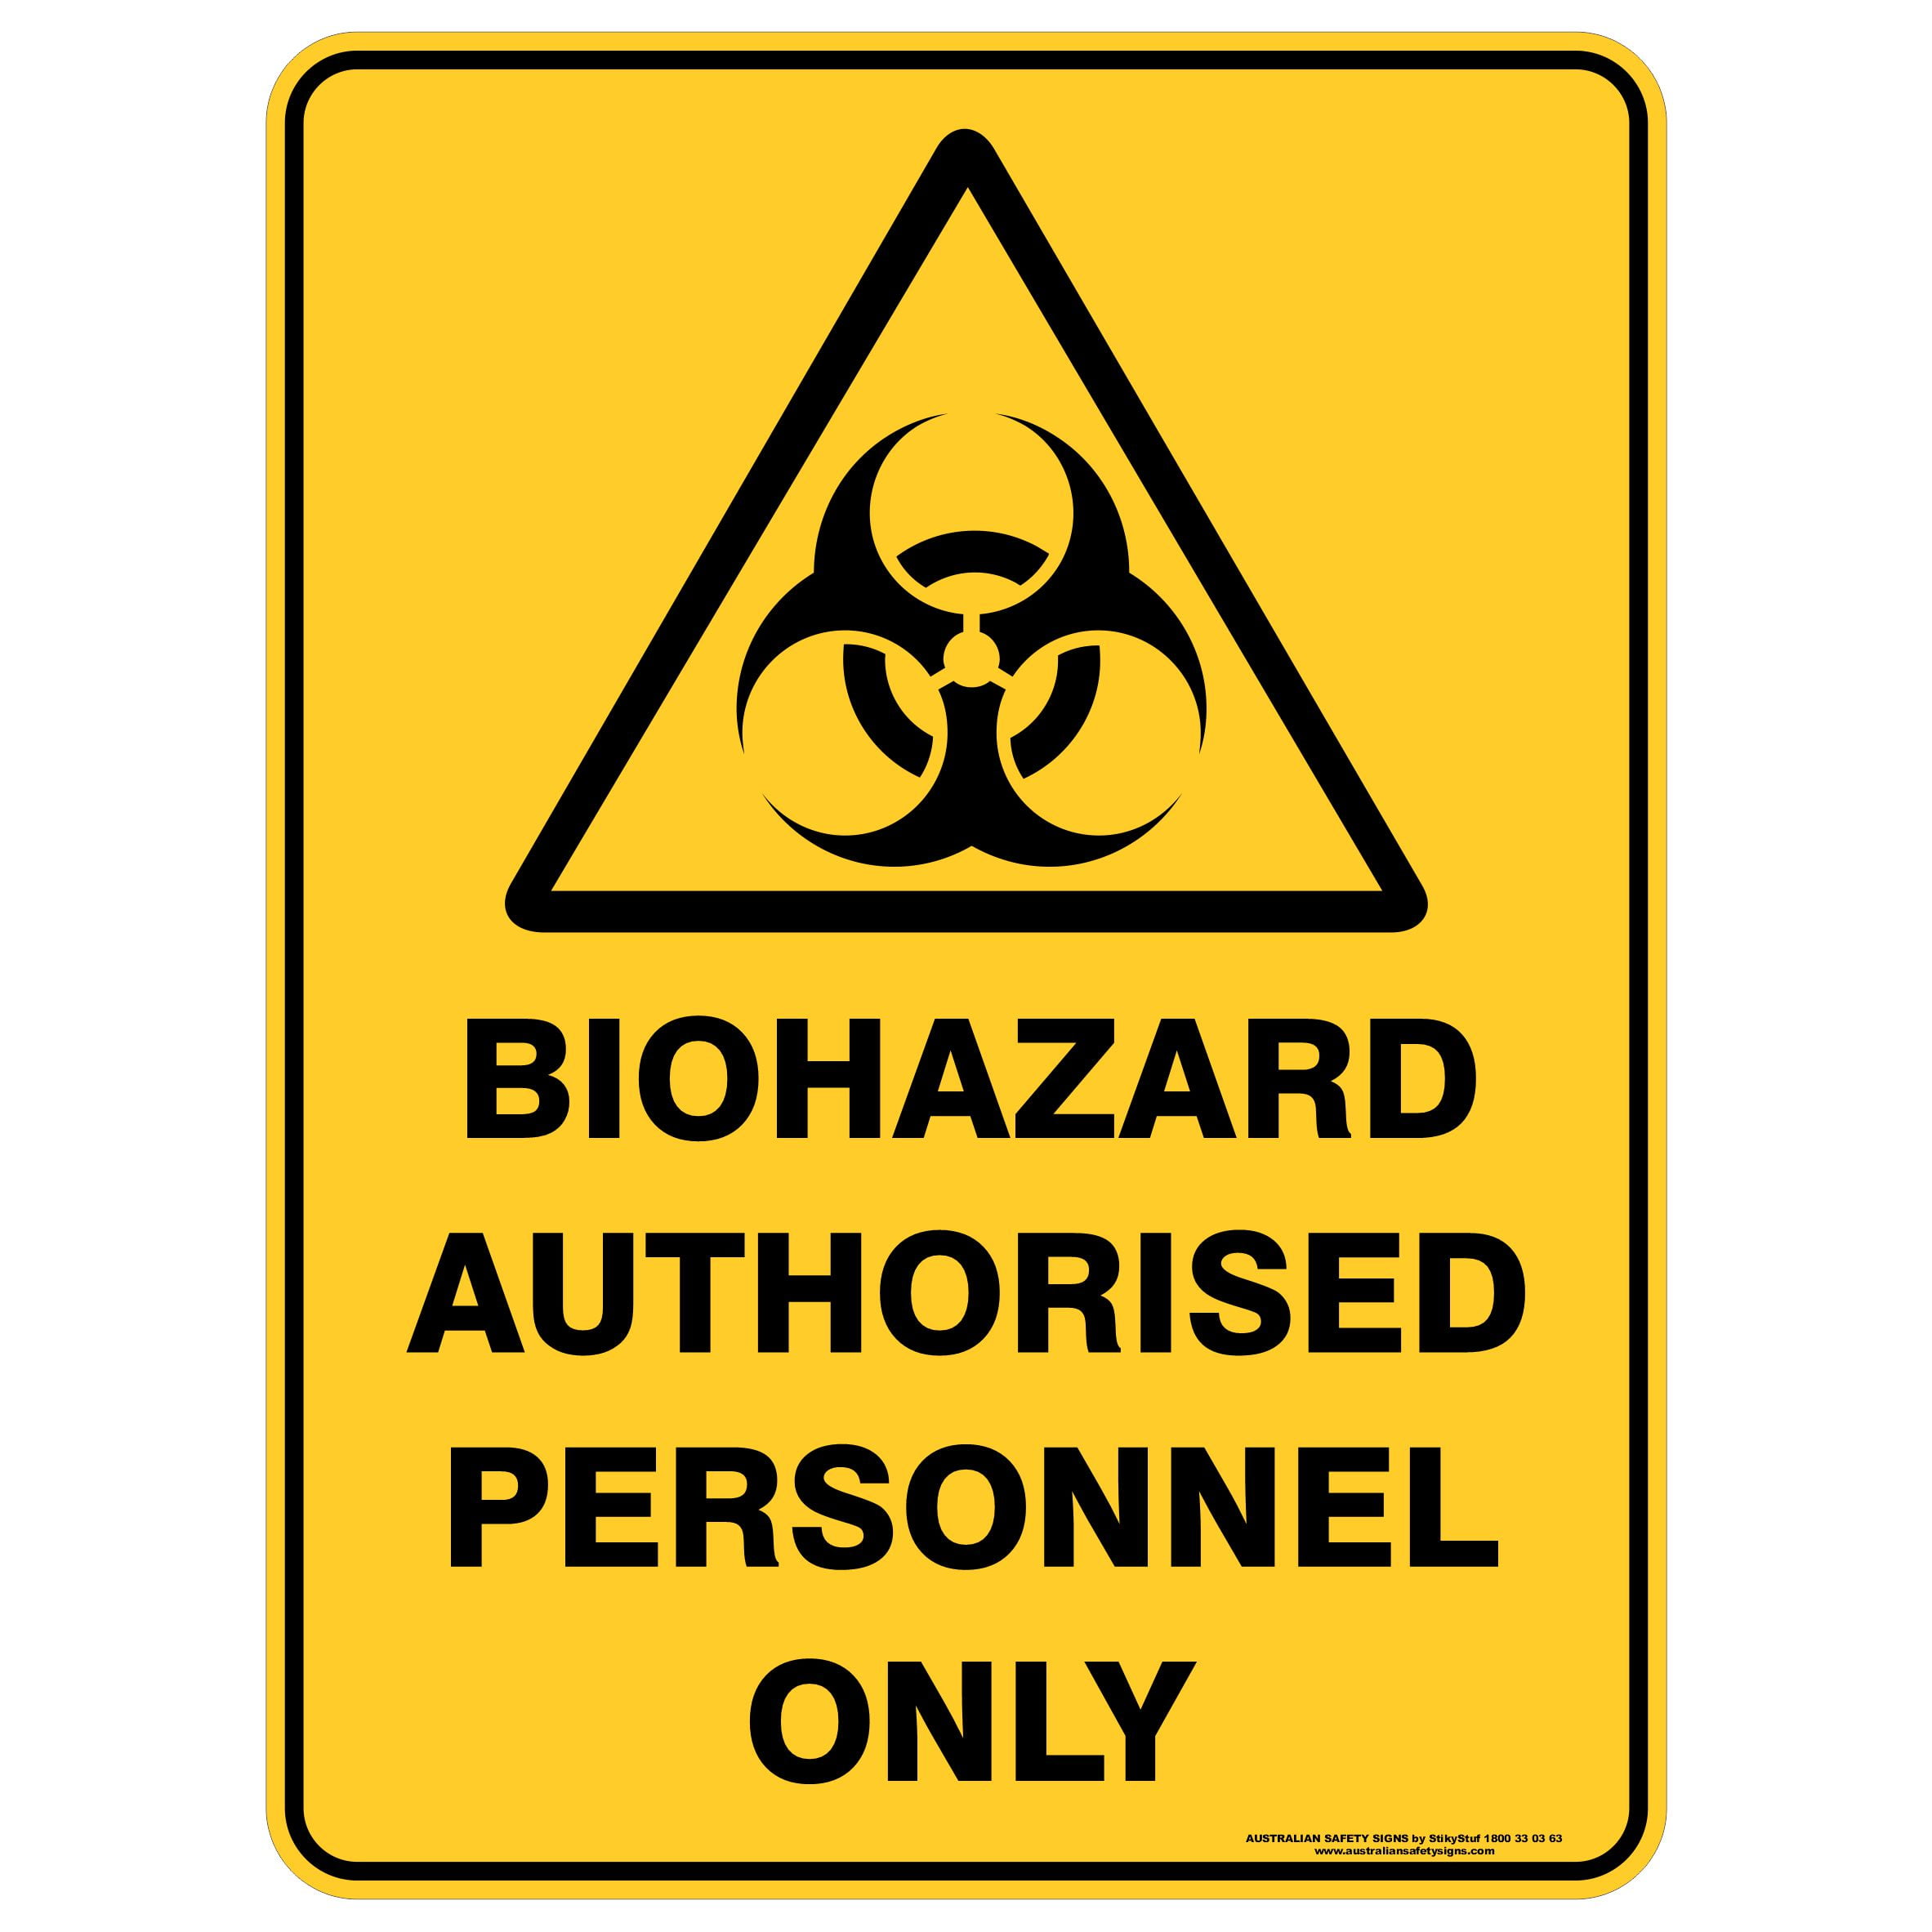 Biohazard перевод. Табличка яд. Осторожно биологическая опасность. Наклейка биологическая опасность. Предупреждение о биологической опасности.